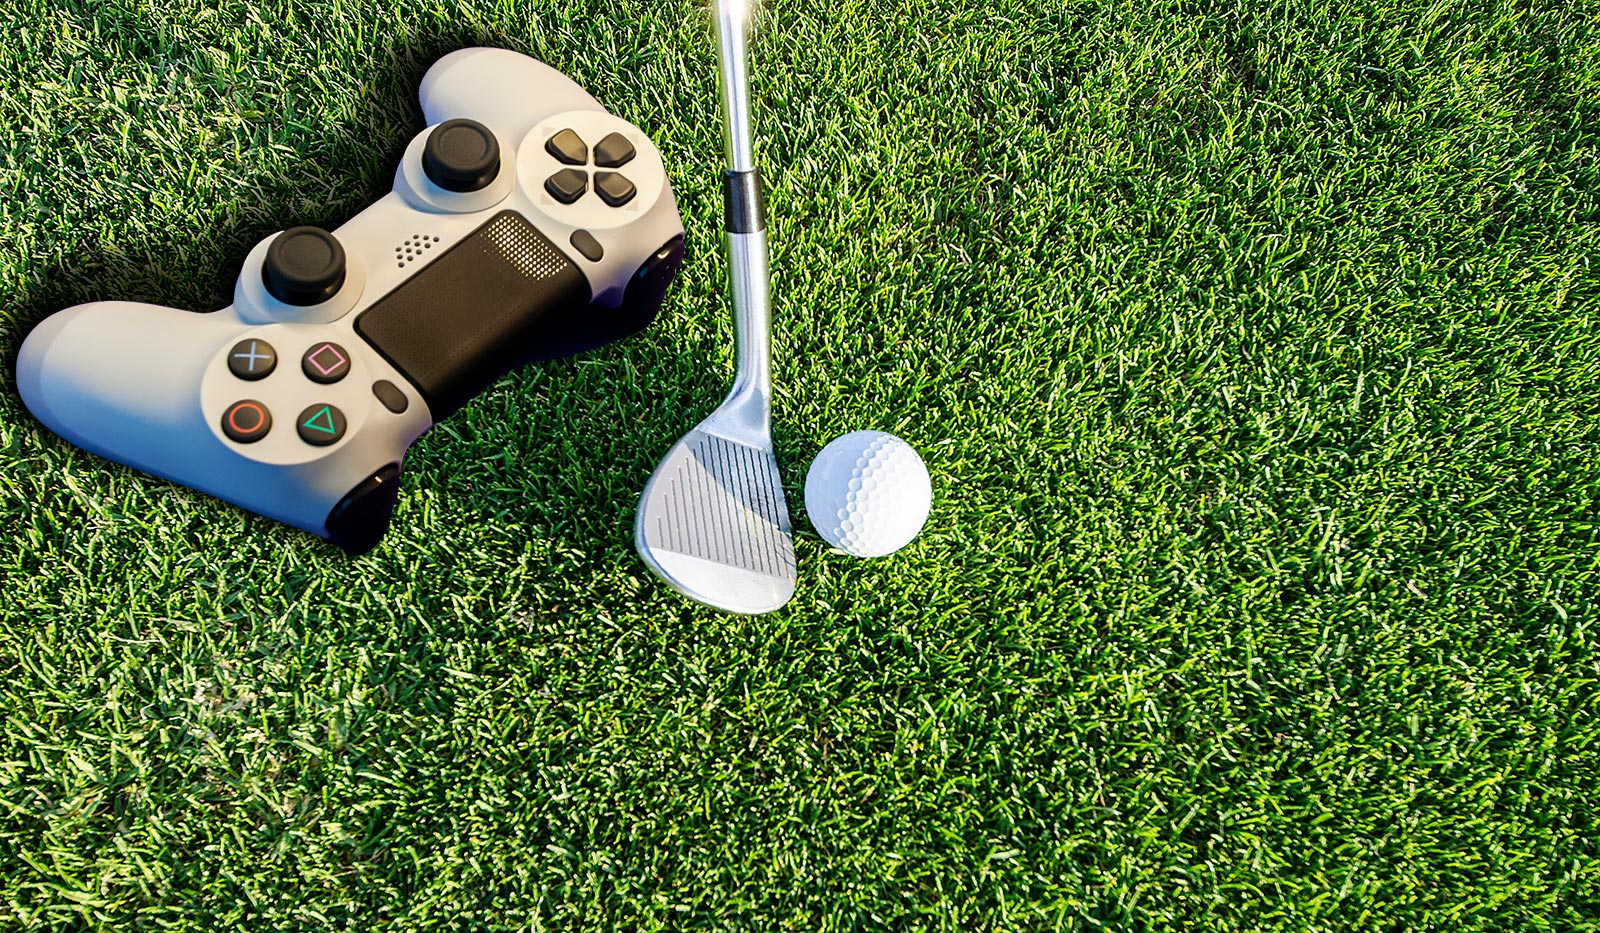 robert ruggiero U5HMj5J6Opg unsplash - Golf Spiele für Smartphone und Konsole